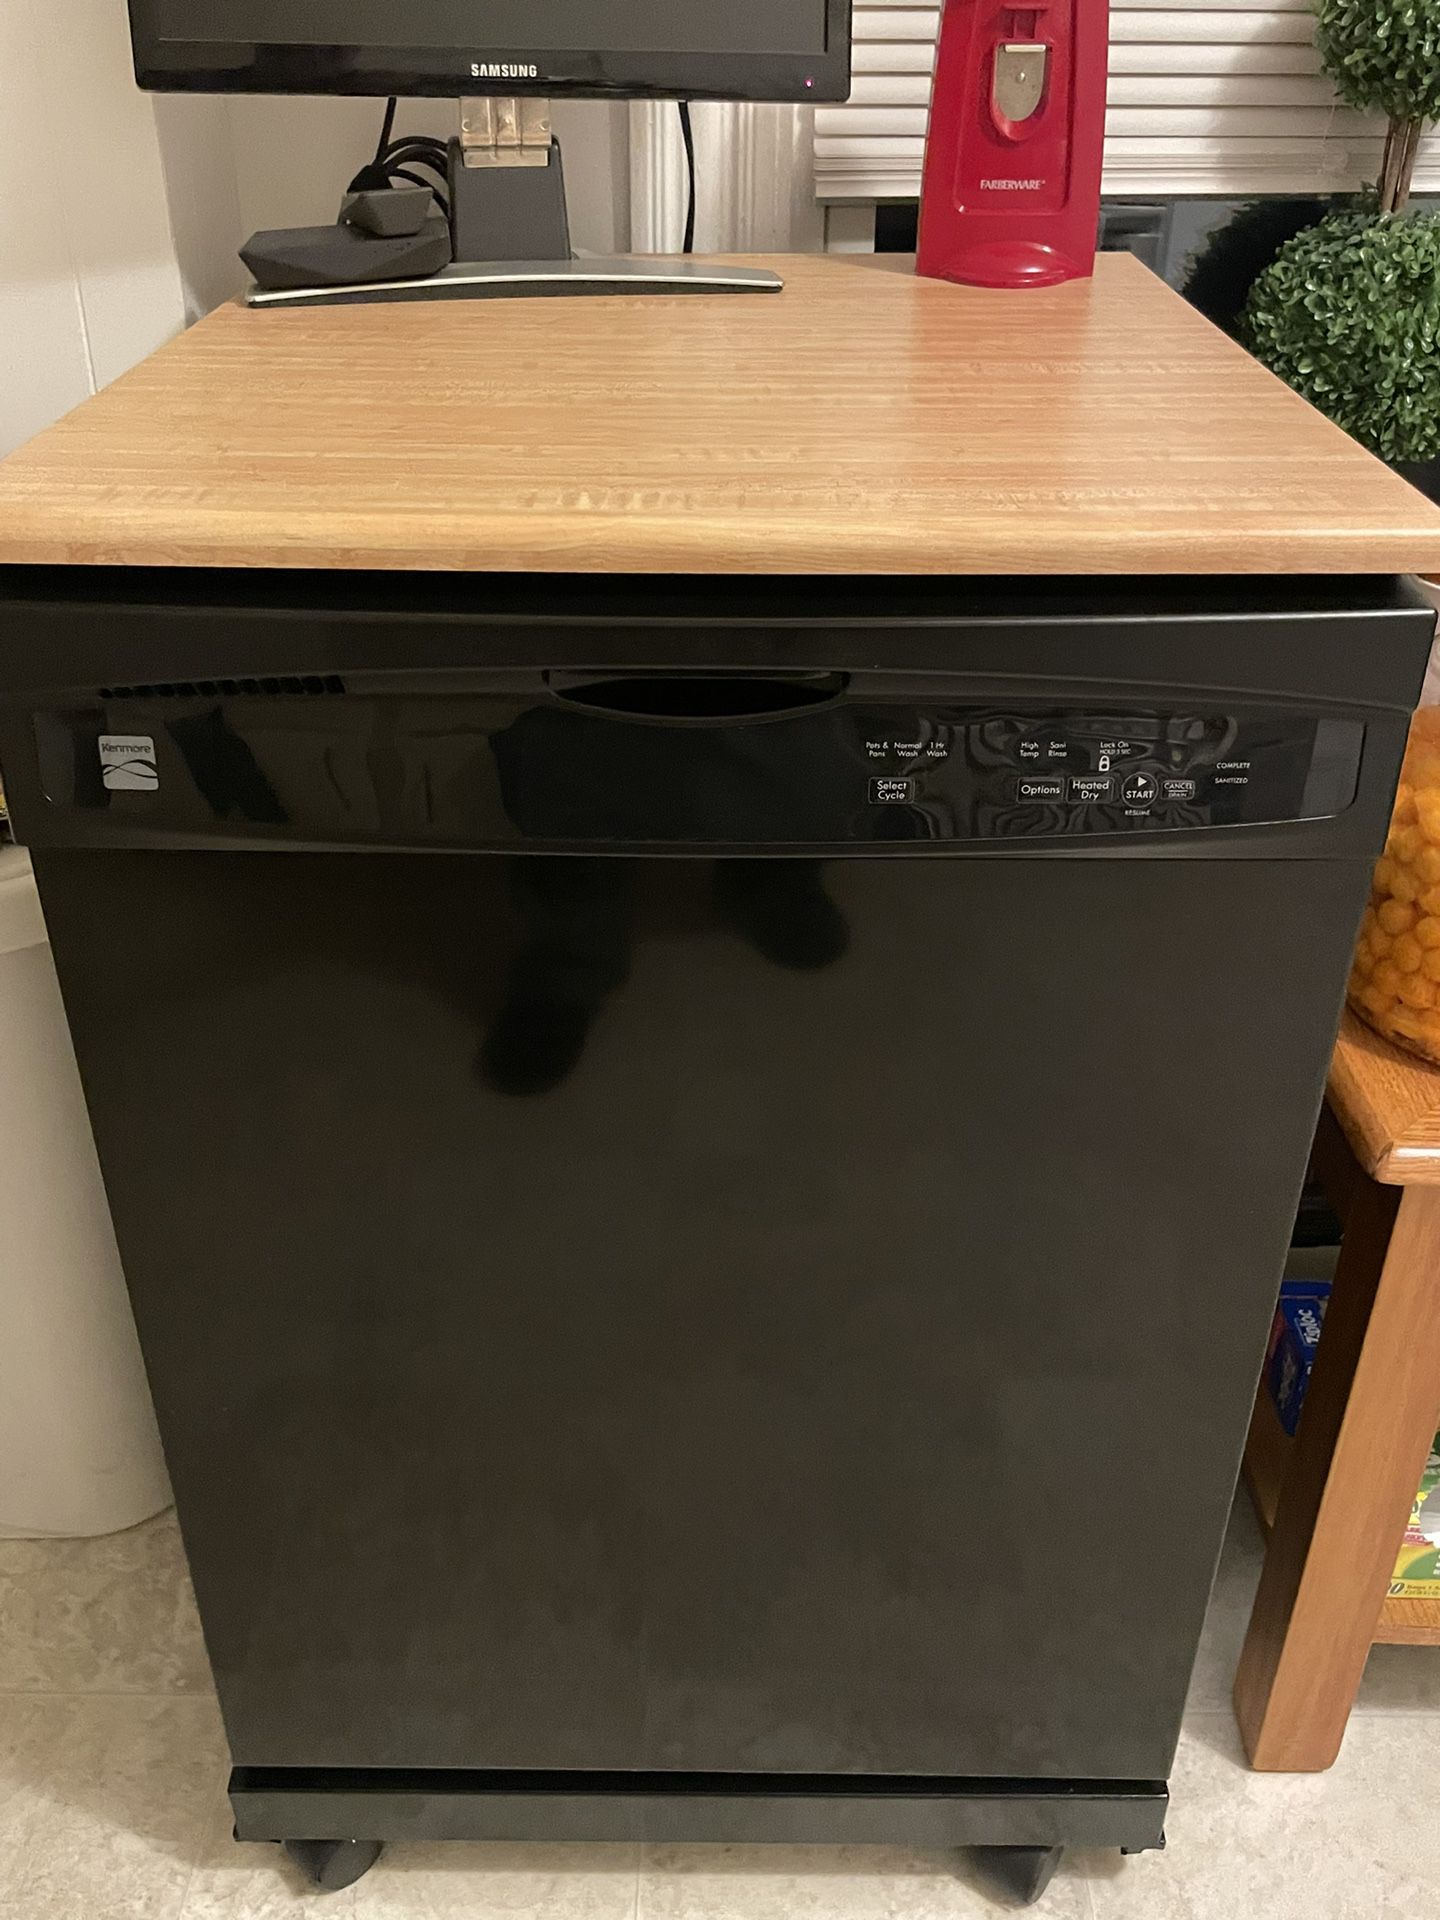 Kenmore Portable Dishwasher!